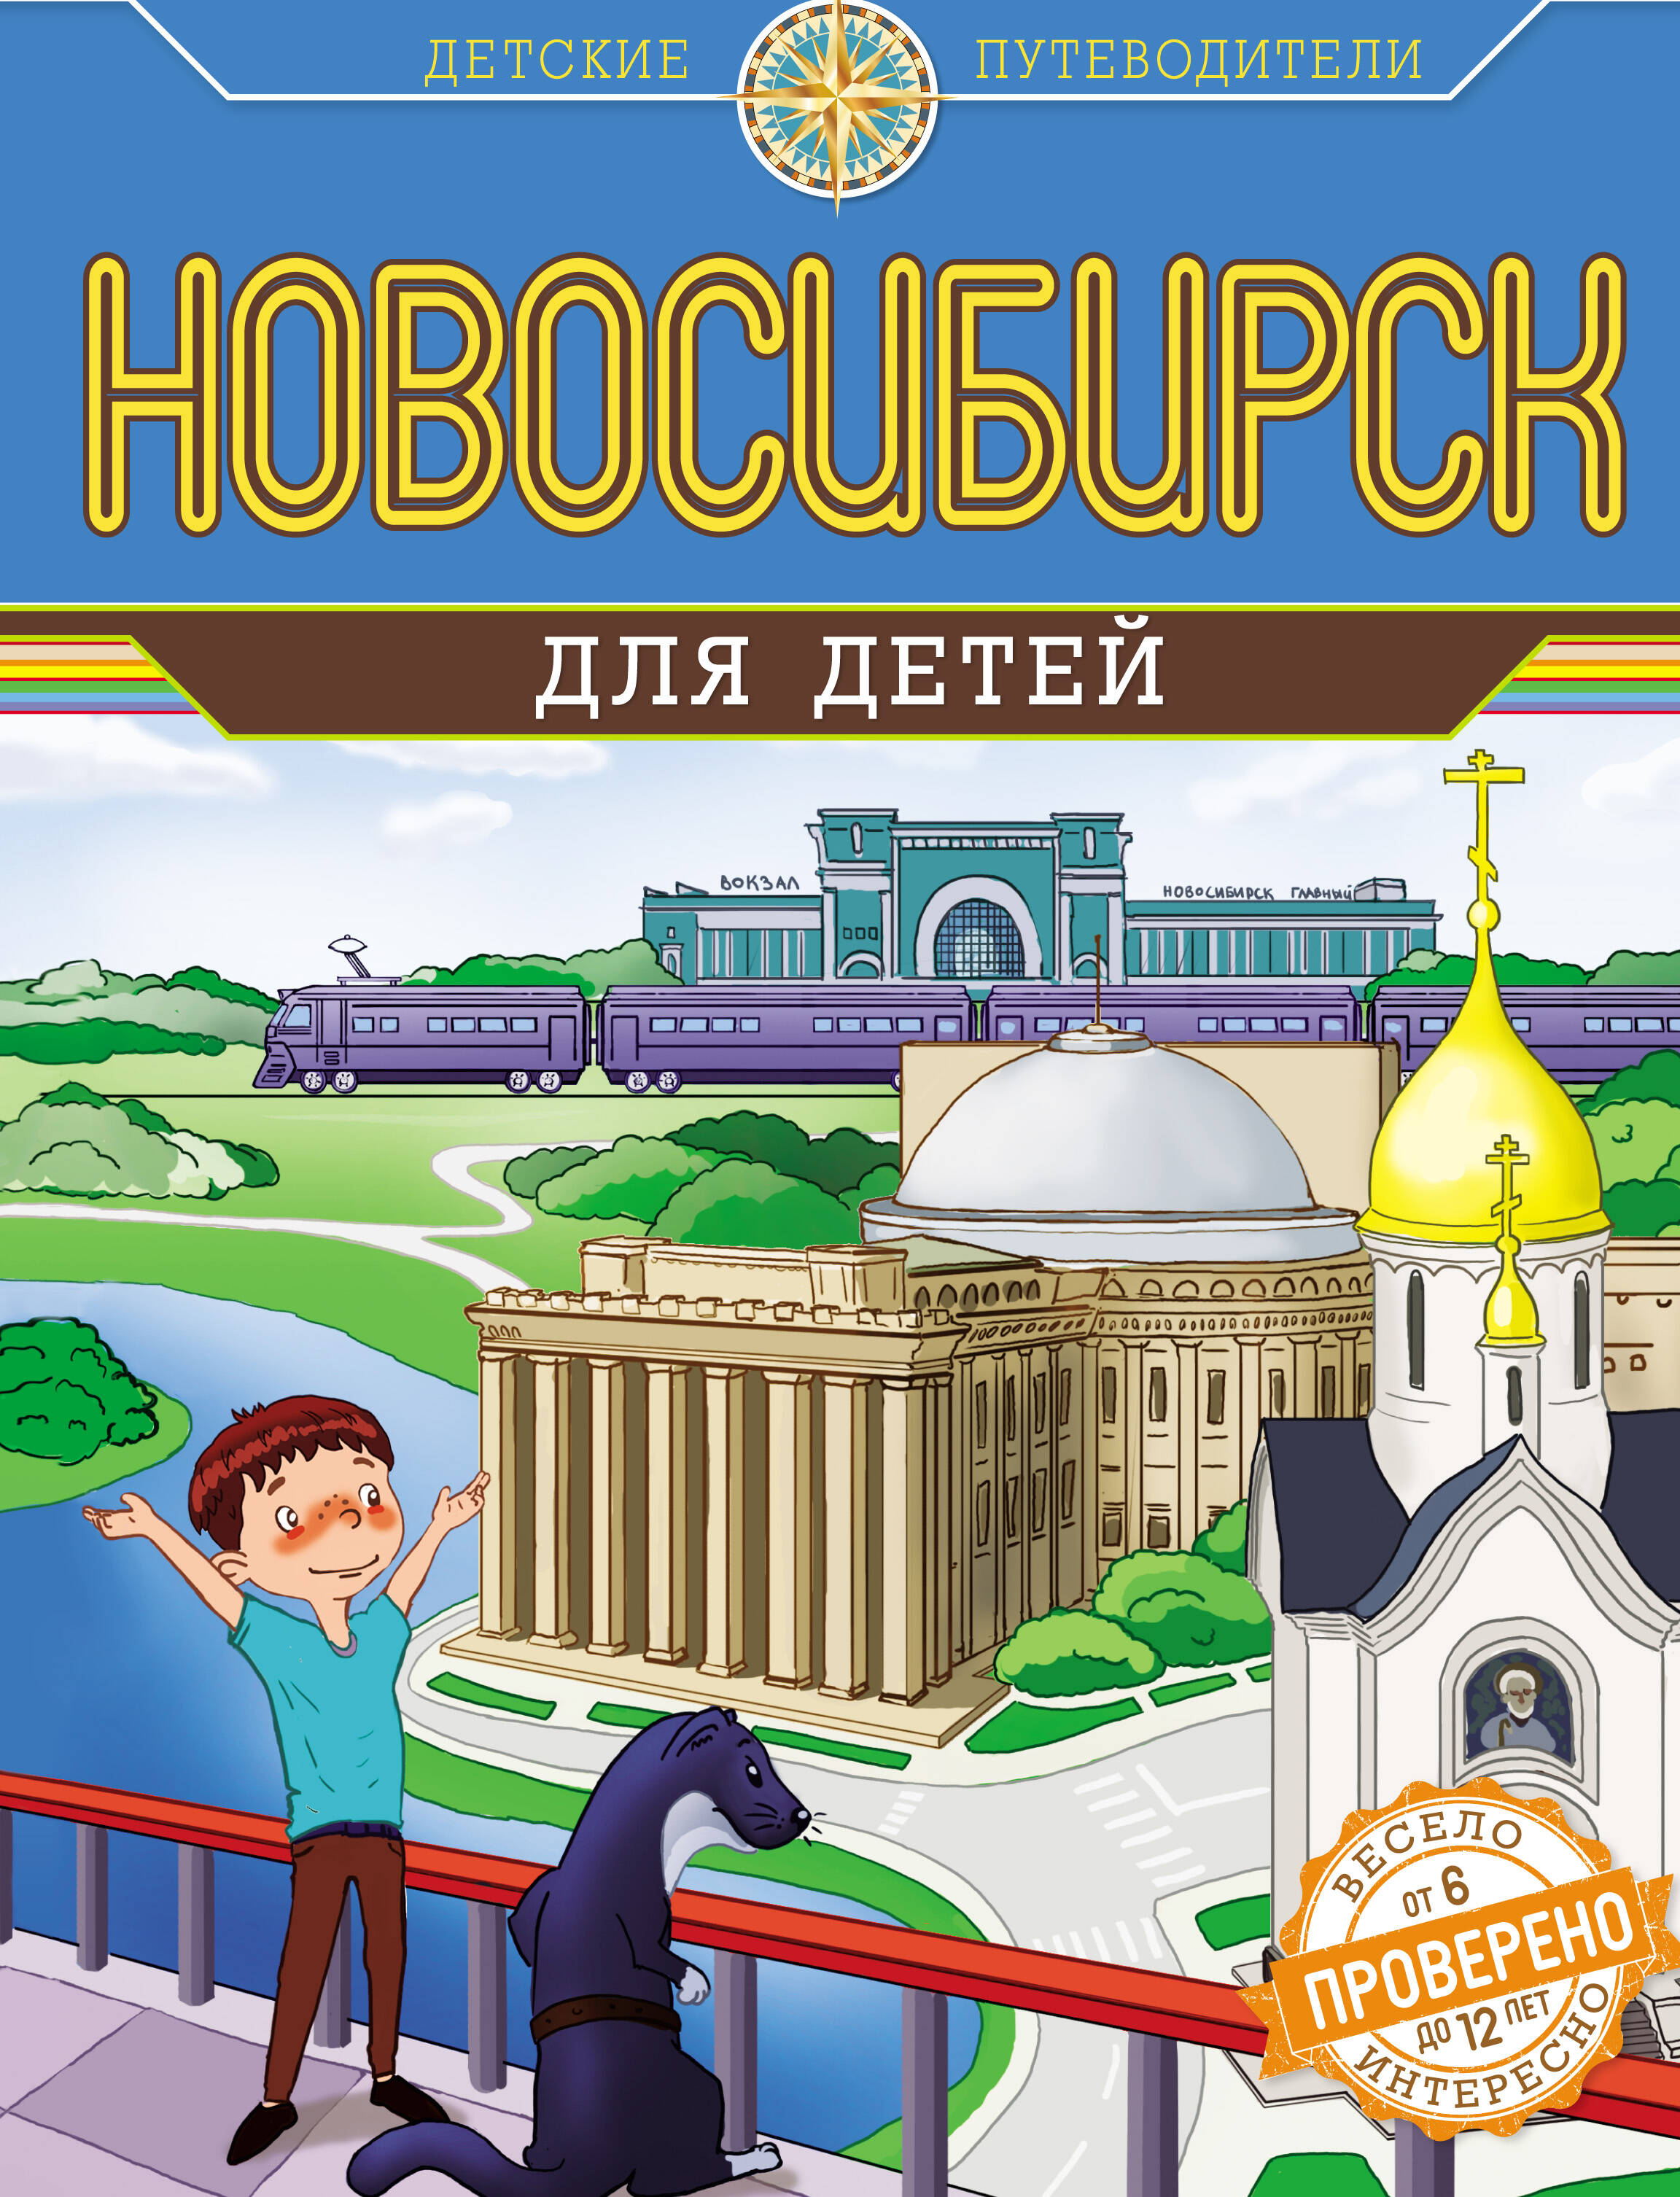 Новосибирск для детей (от 6 до 12 лет)